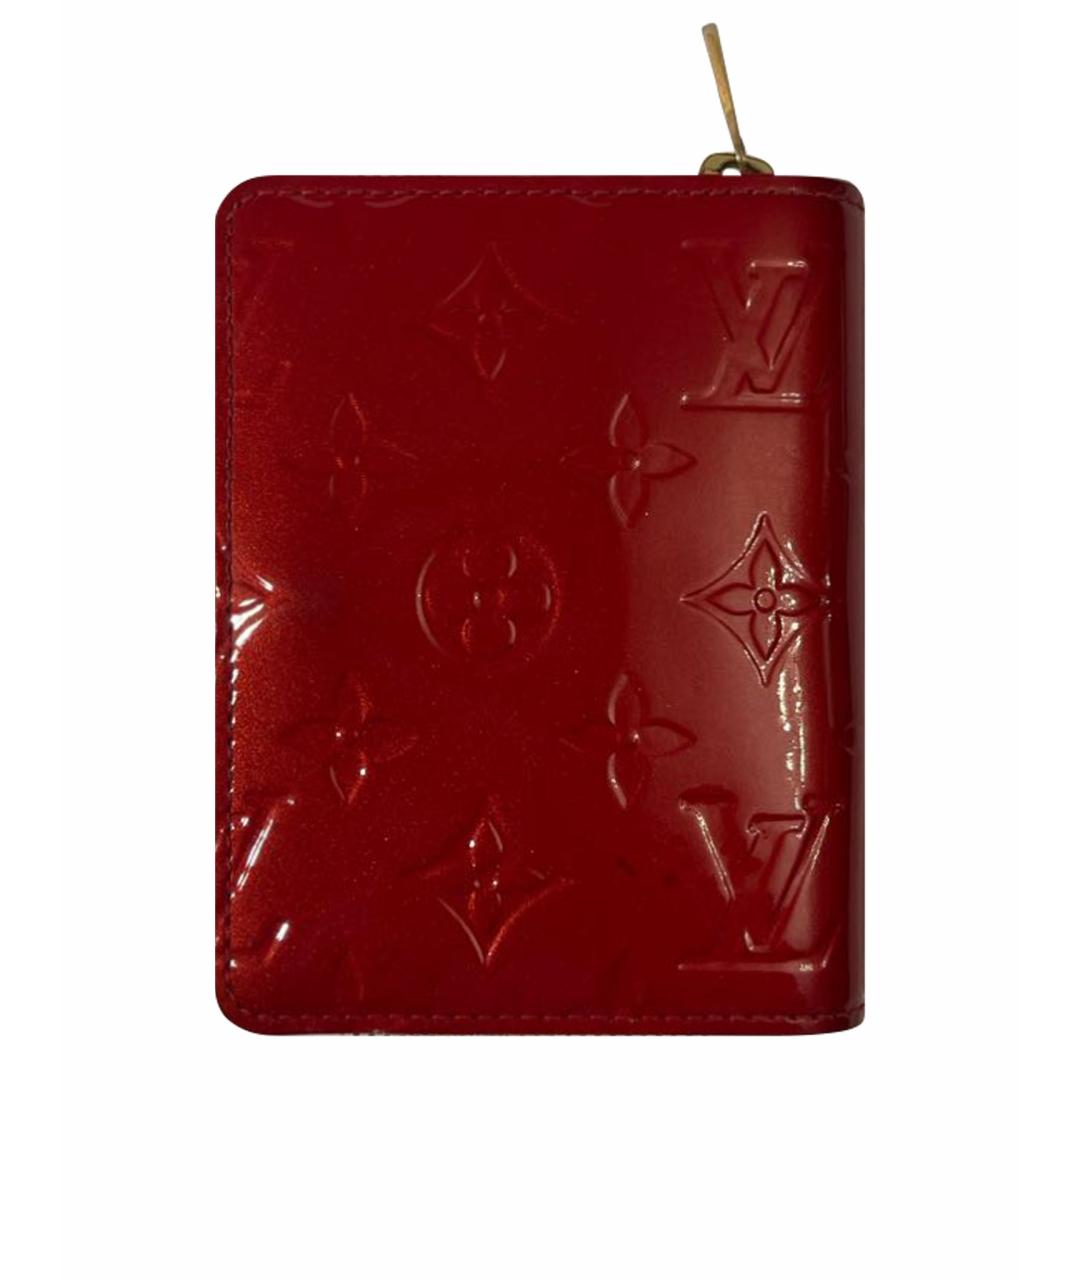 LOUIS VUITTON PRE-OWNED Красный кошелек из лакированной кожи, фото 1